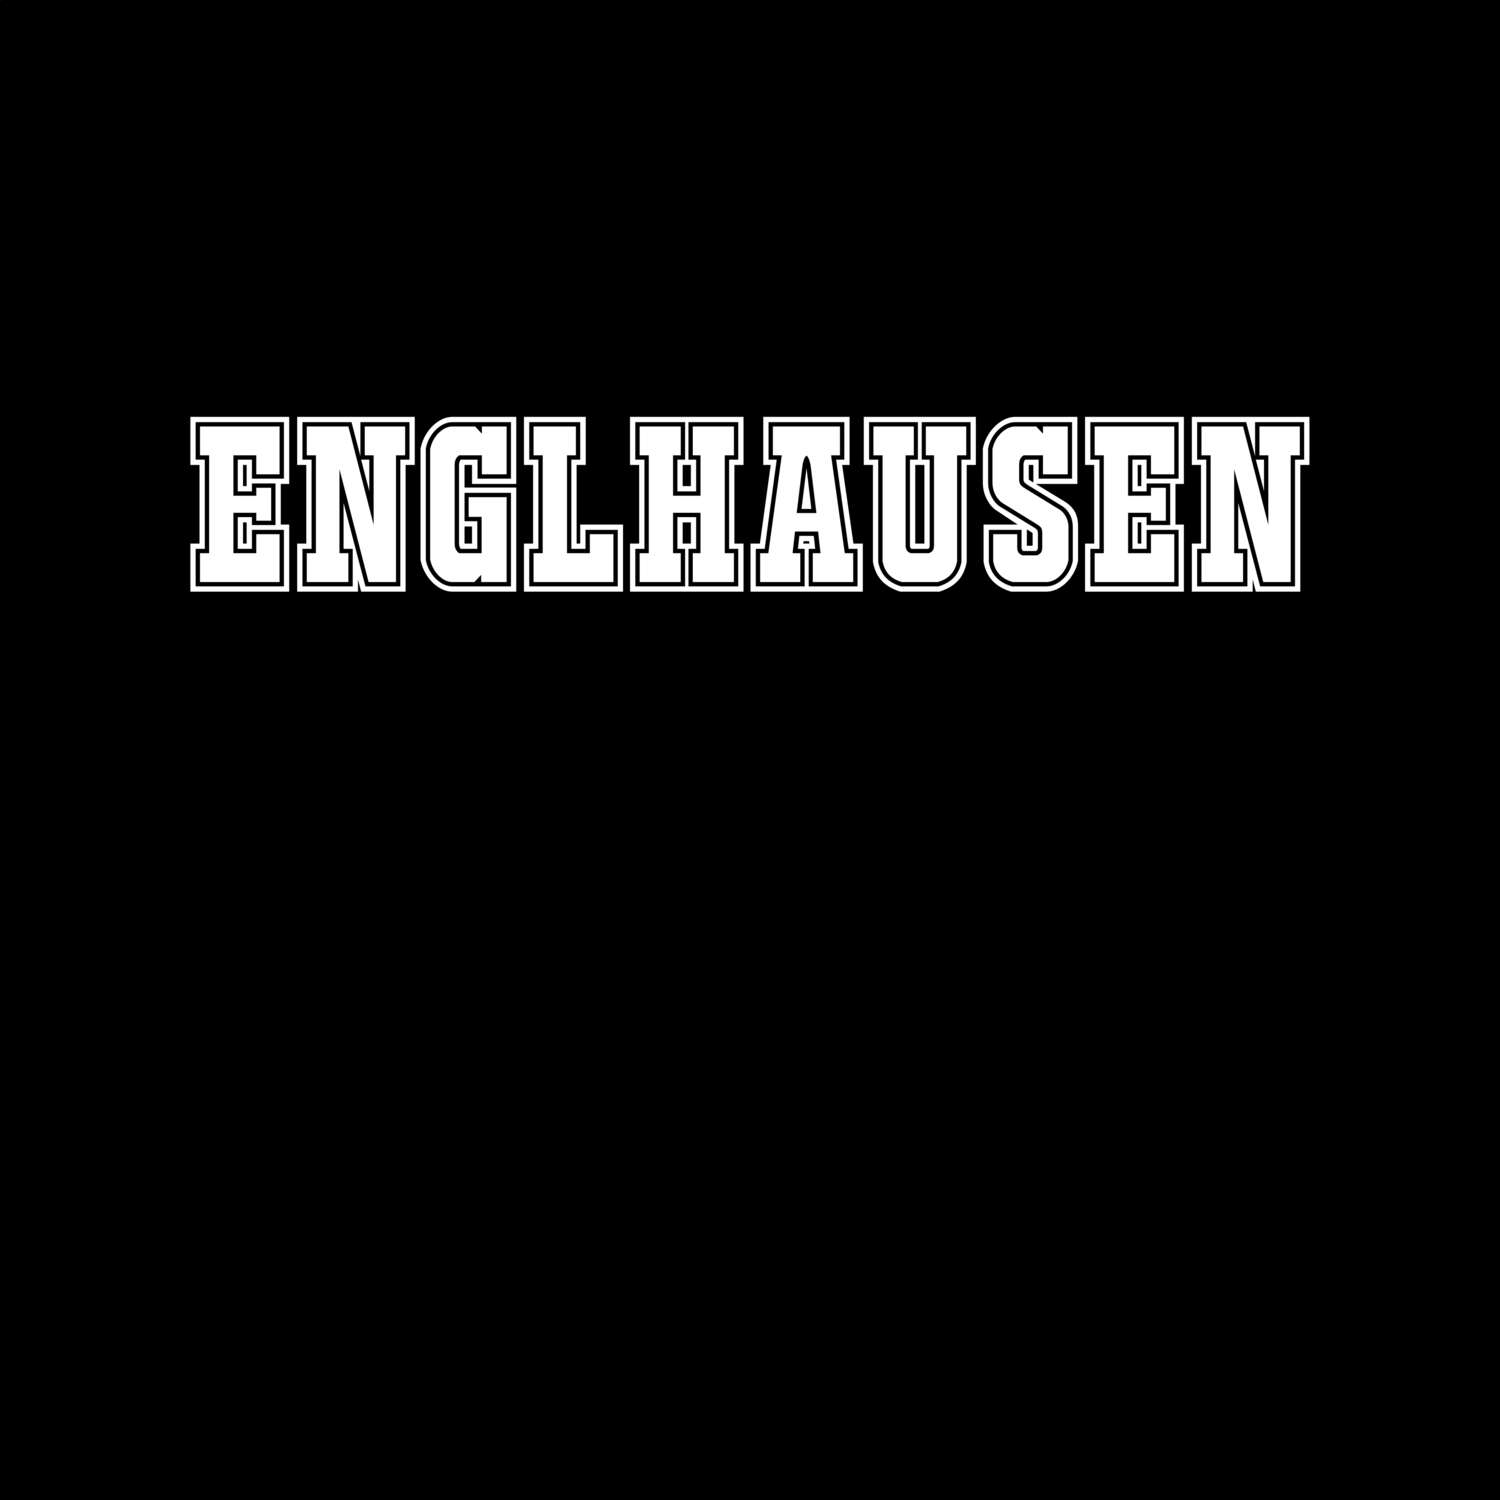 Englhausen T-Shirt »Classic«